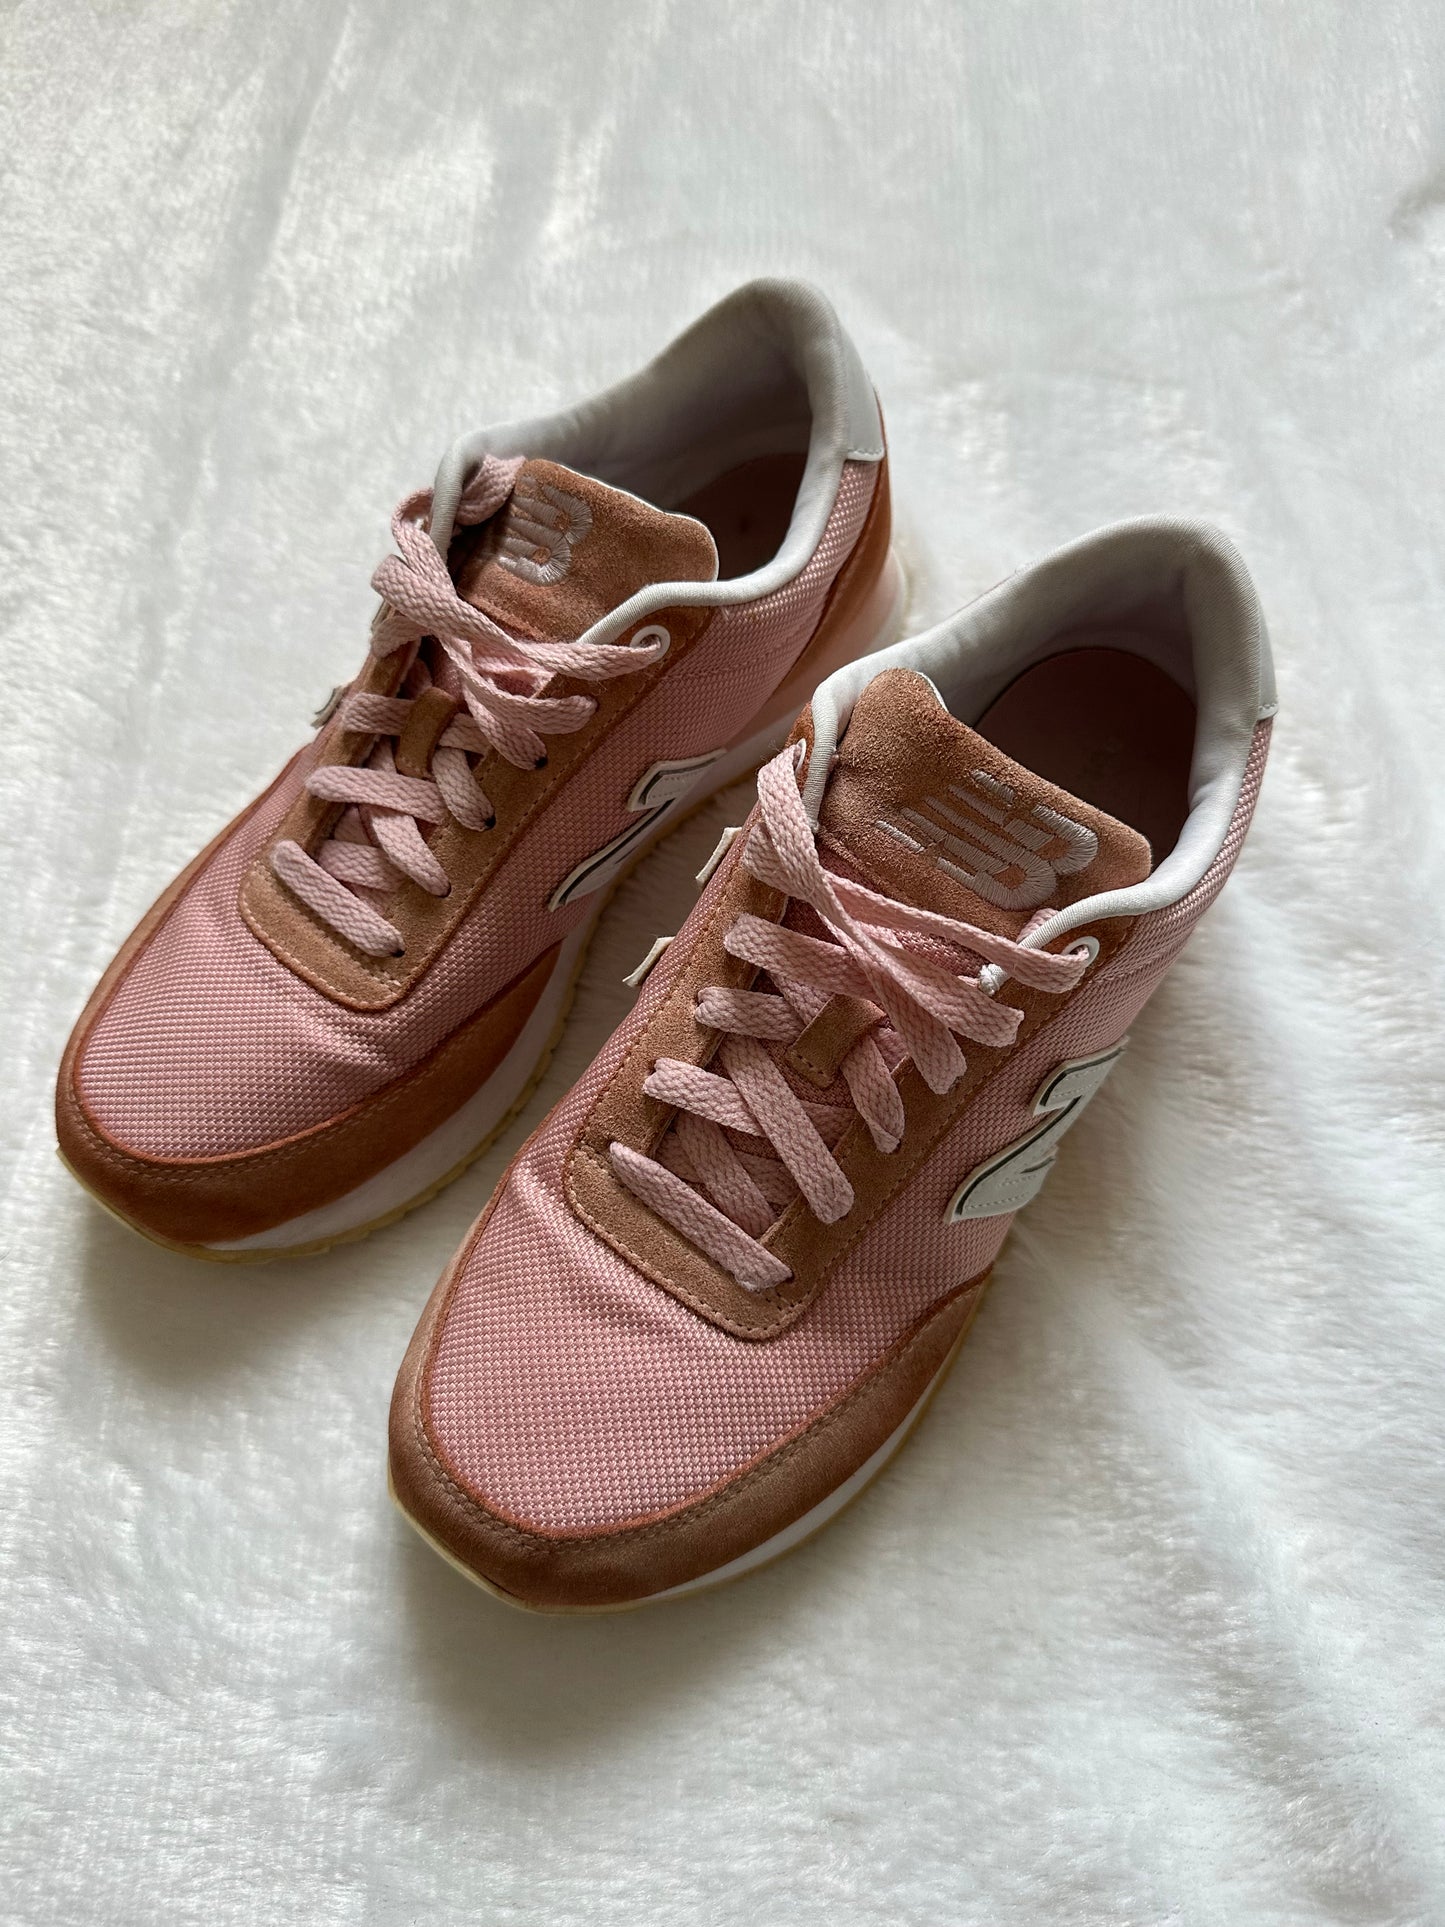 New Balance Pink Sneakers - Better World Thrift